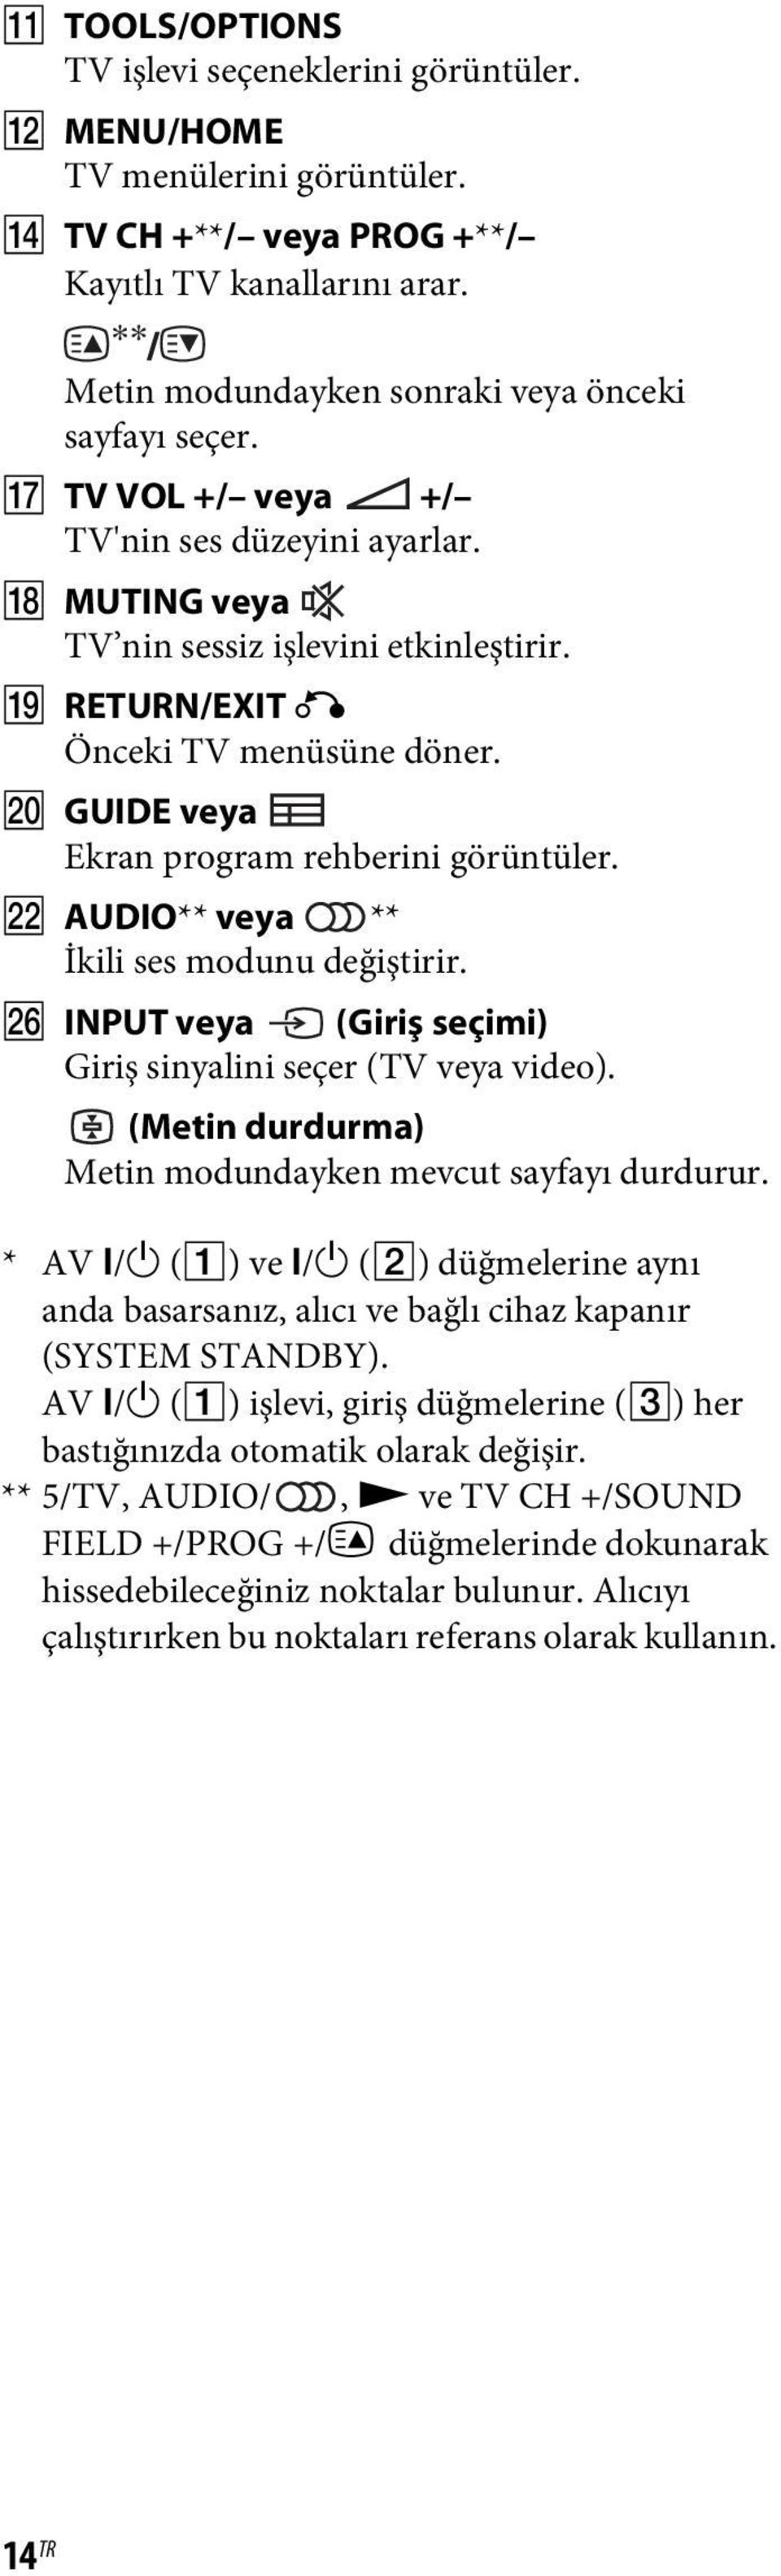 V AUDIO** veya ** İkili ses modunu değiştirir. Z INPUT veya (Giriş seçimi) Giriş sinyalini seçer (TV veya video). (Metin durdurma) Metin modundayken mevcut sayfayı durdurur. * AV?/1 (A) ve?